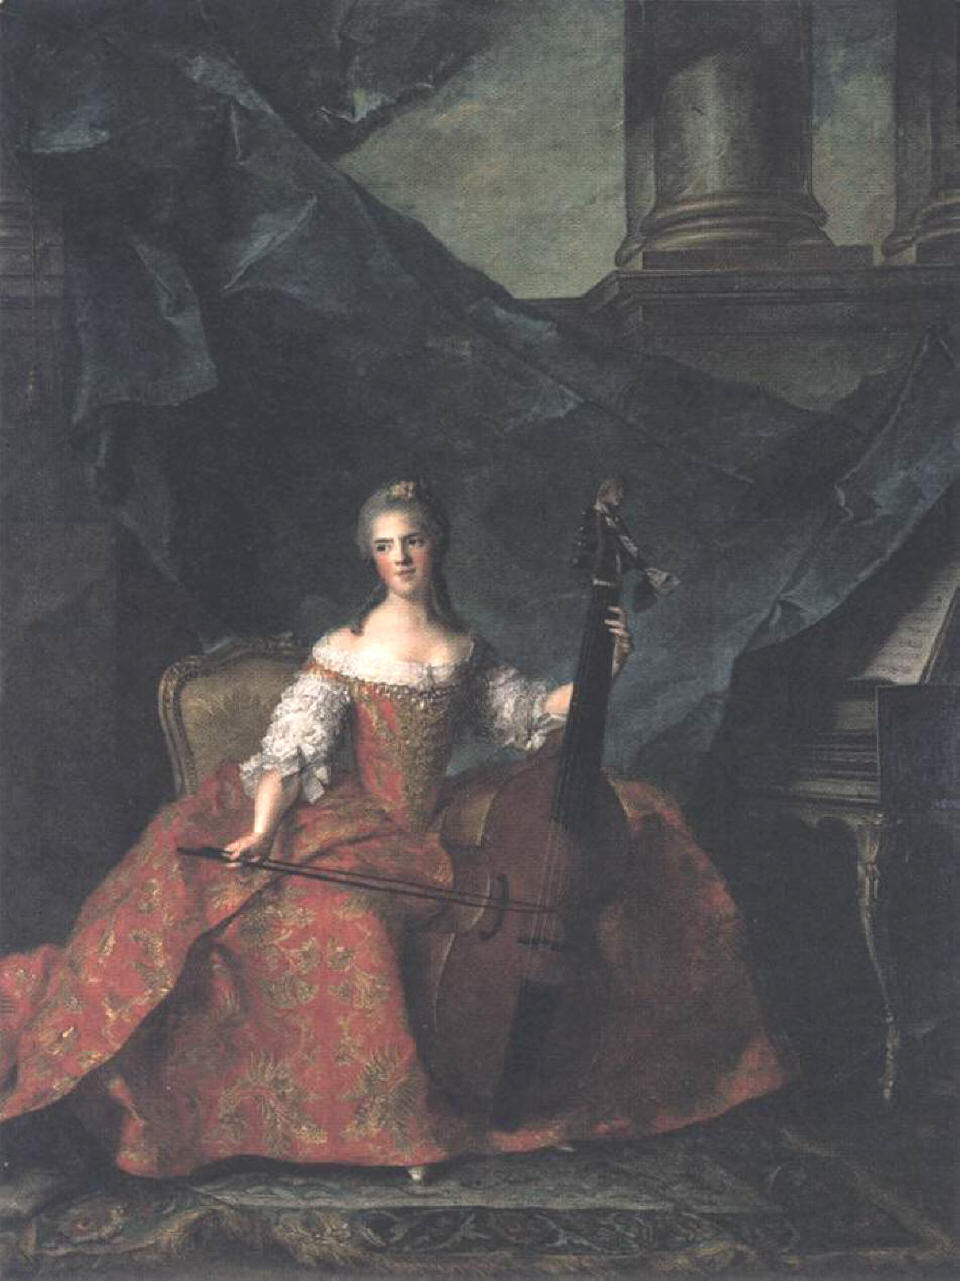 Madame Henriette mentre suona la viola da gamba